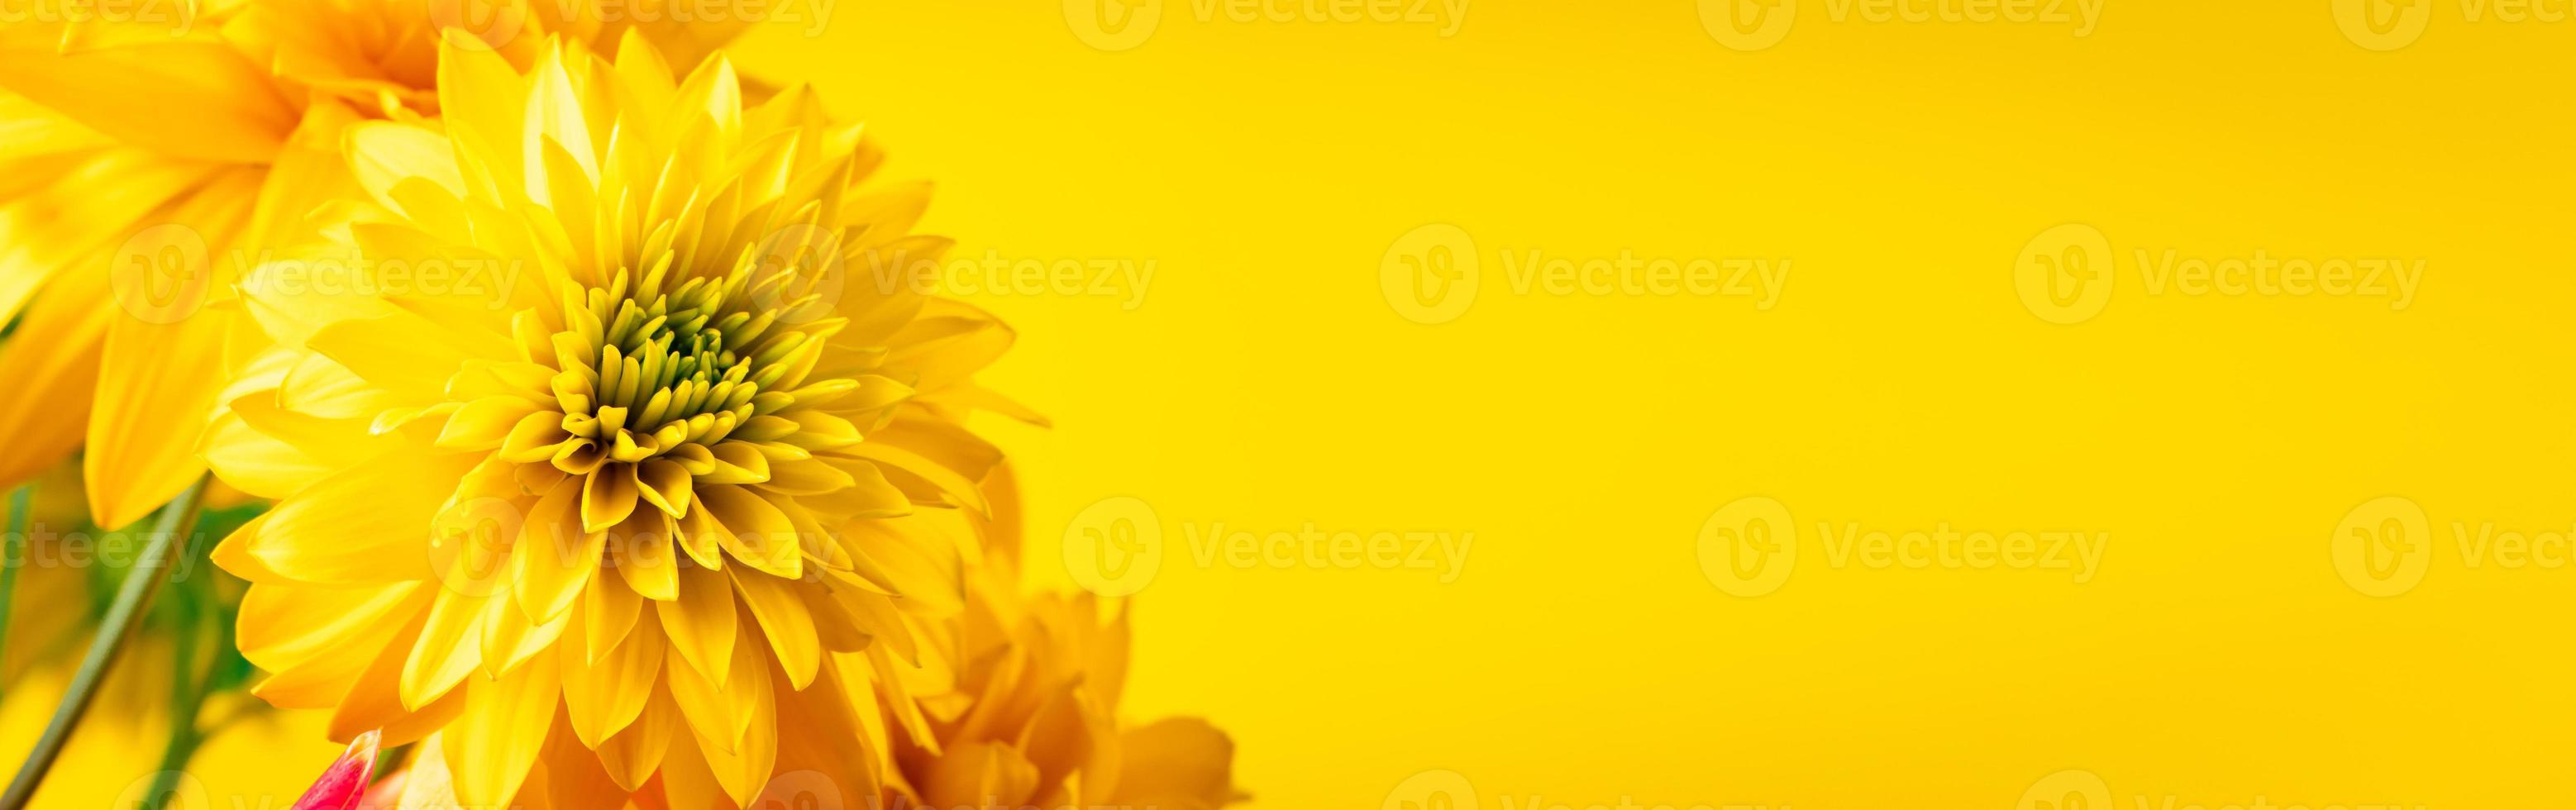 crisantemos amarillos y gerberas sobre fondo brillante. concepto de verano. postal de saludo. lugar para texto, formato de banner. foto